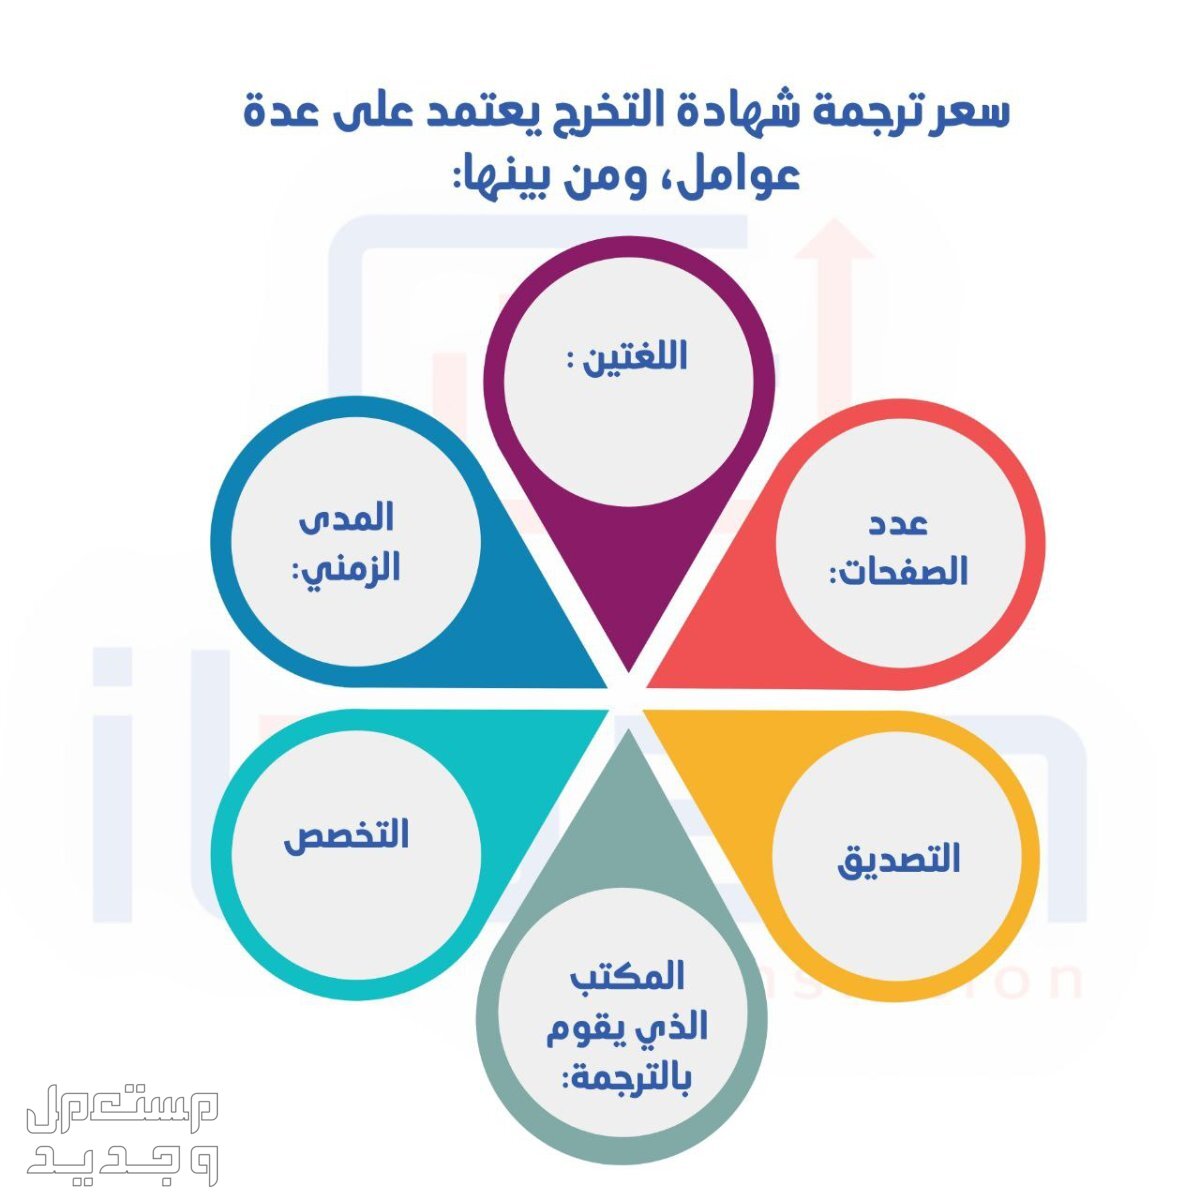 إتقان” خيارك المثالي للترجمة أفضل مكتب ترجمة في السعودية